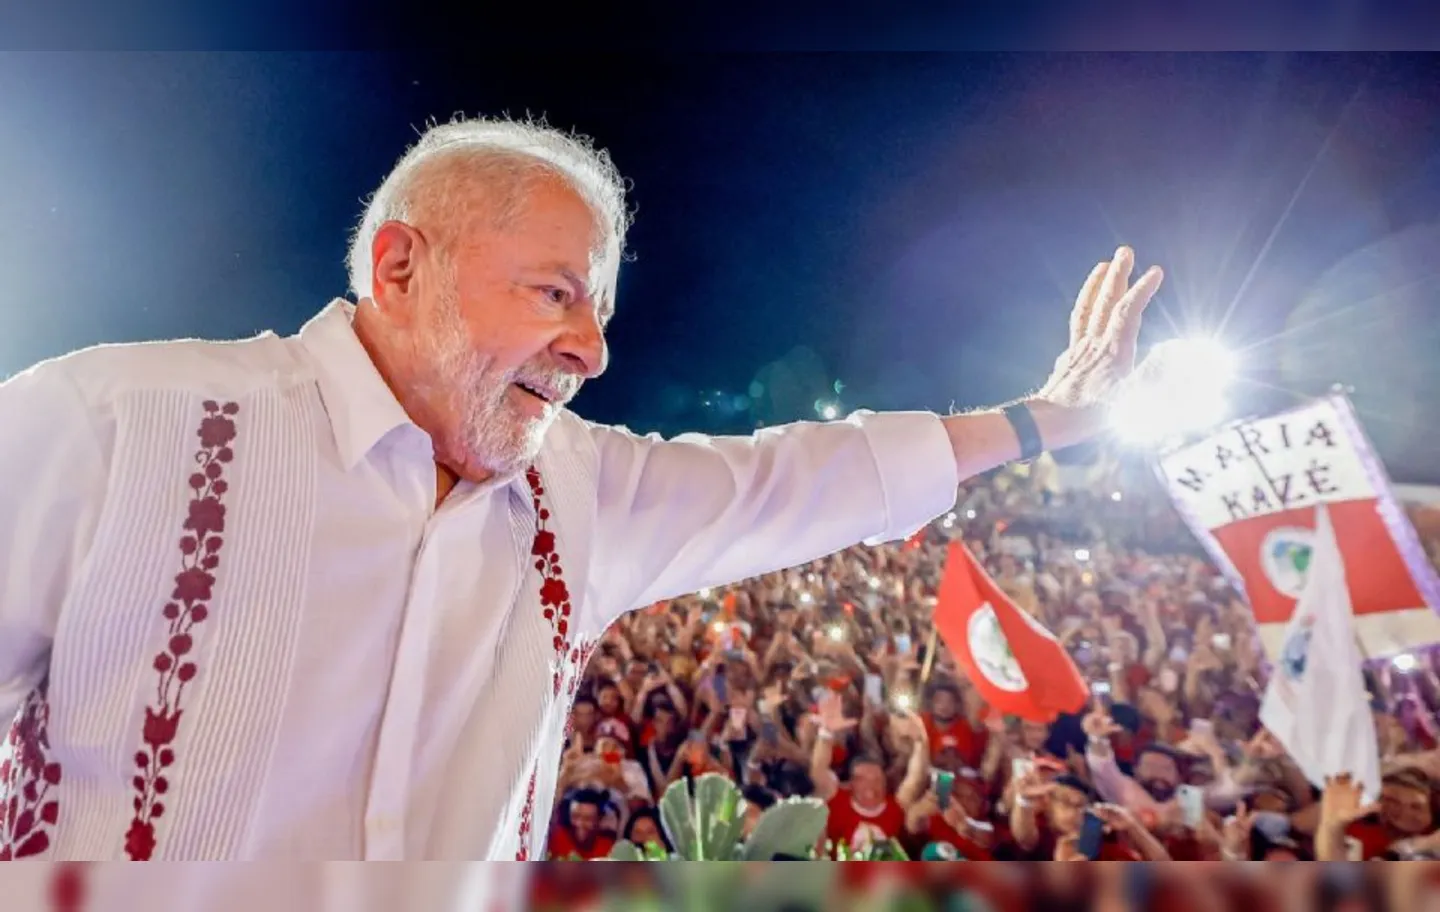 Equipe da PF que protege Lula cita opositores radicalizados e pede apoio